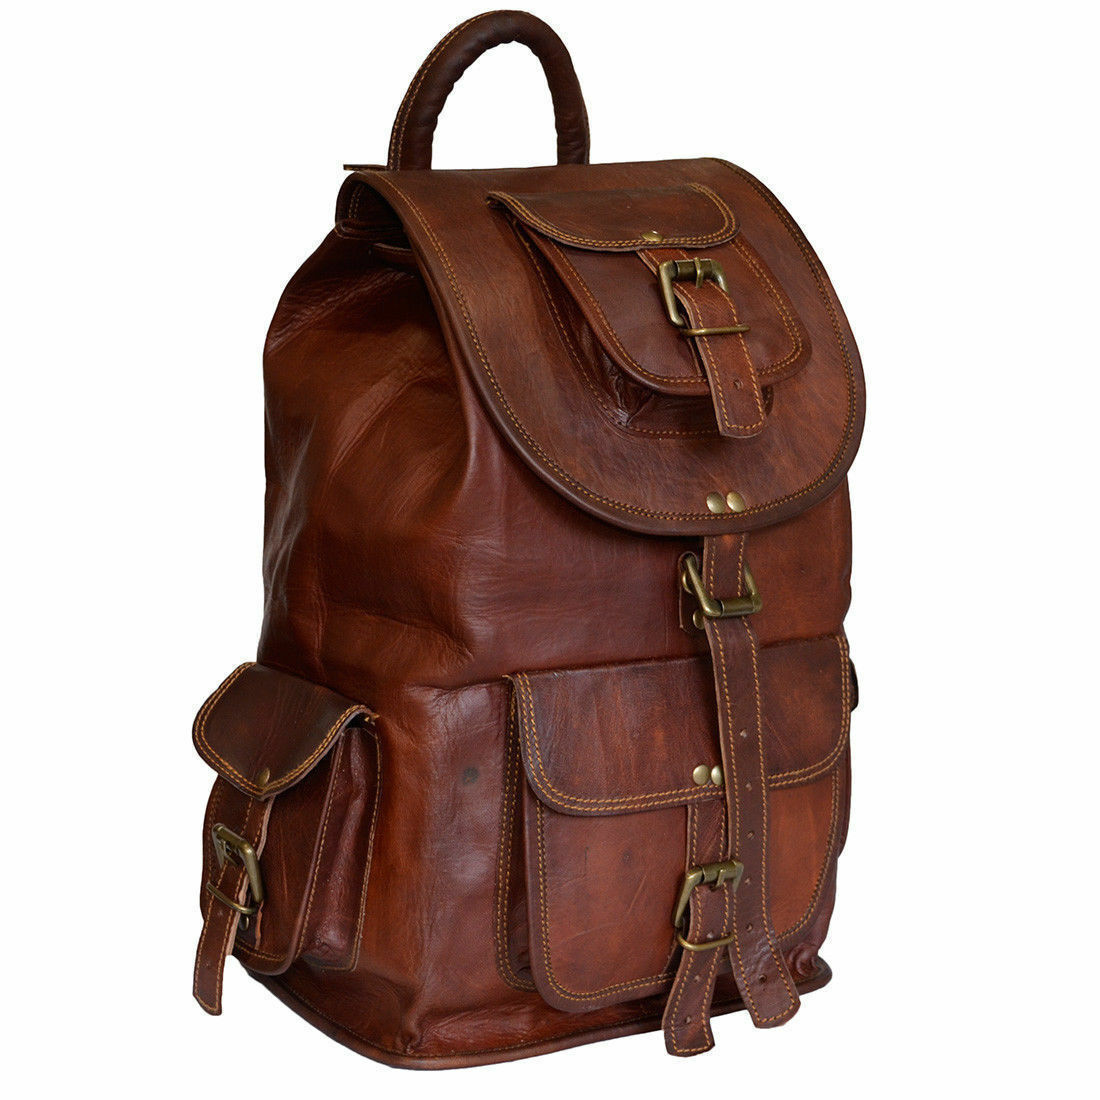 22 Inches Large Backpack for Men Women Handmade Crossbody Bag eBay